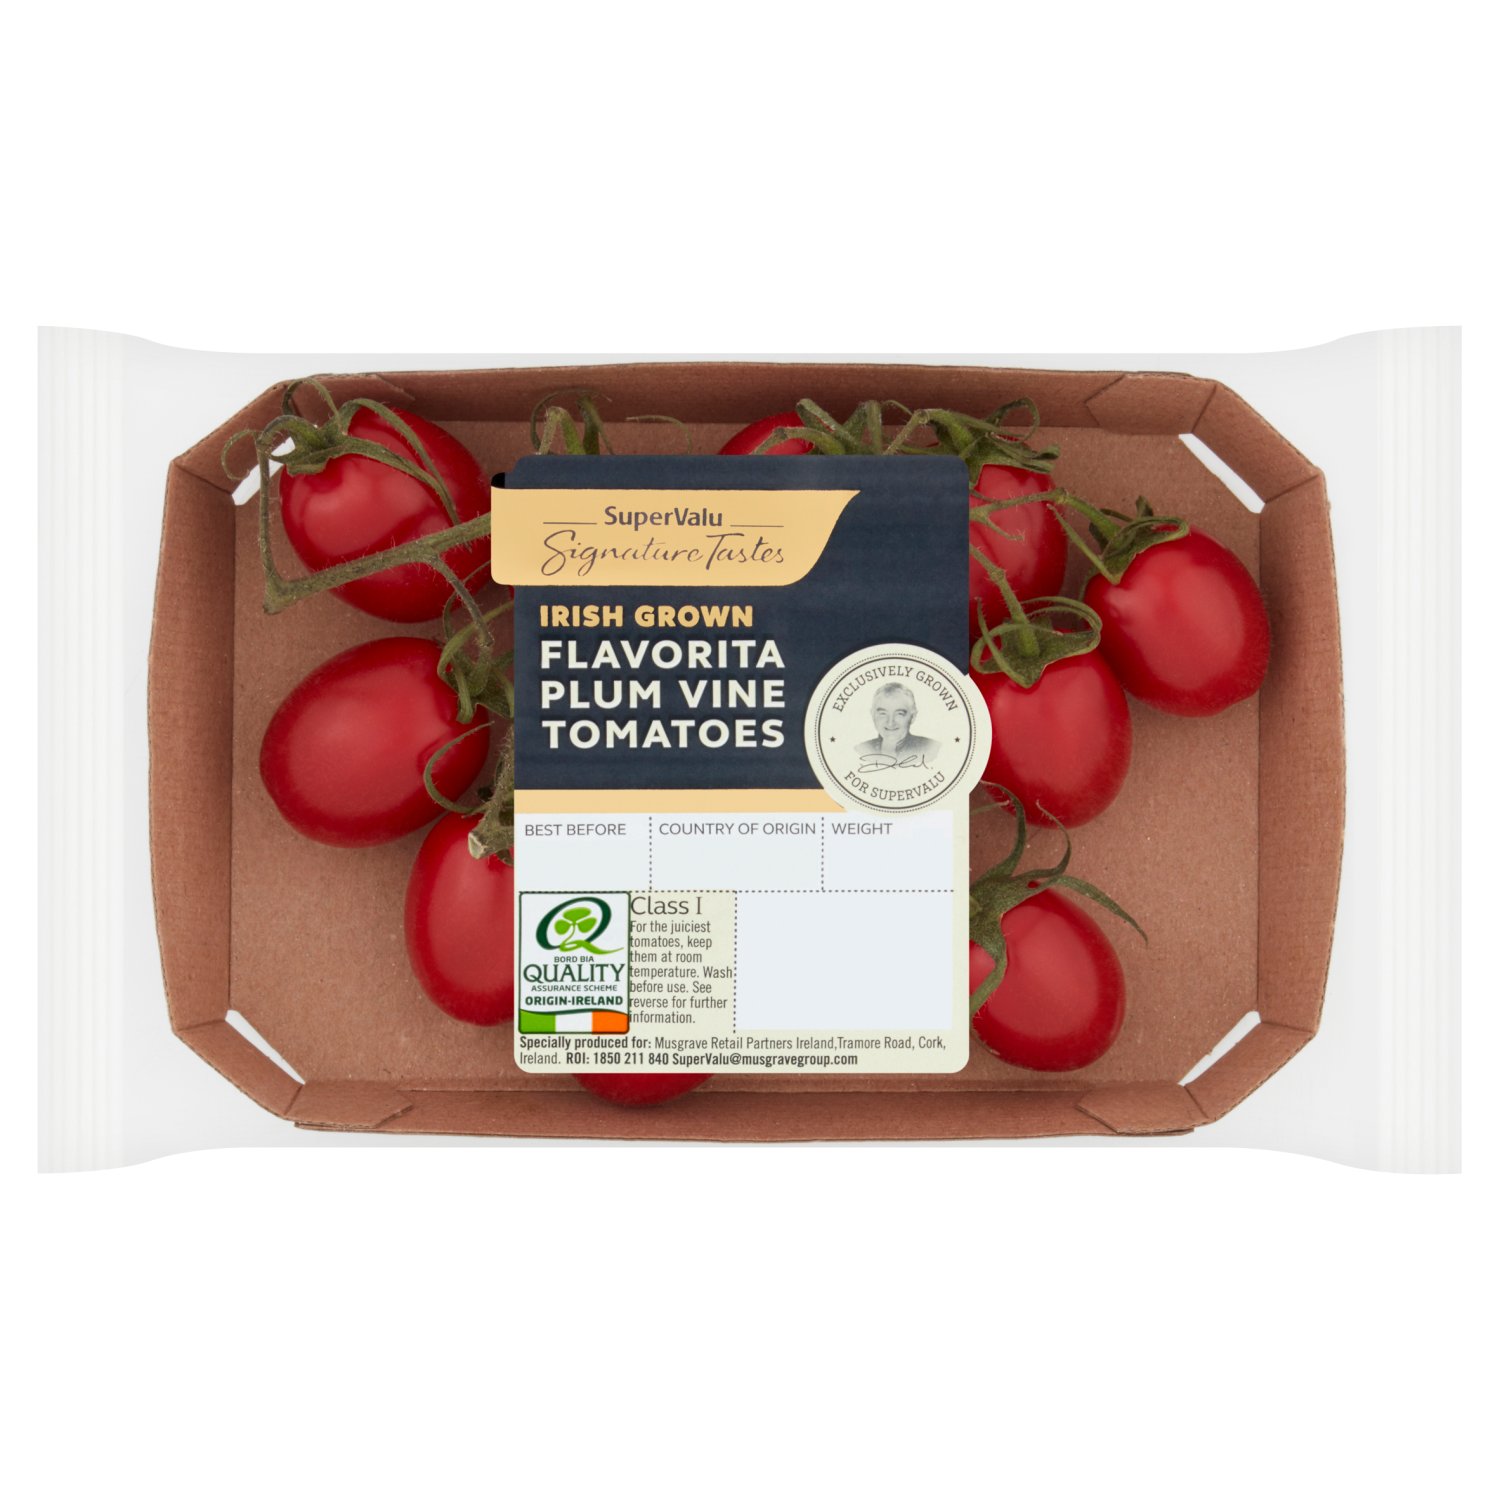 Signature Tastes Irish Flavorita Plum Vine Tomatoes (200 g)